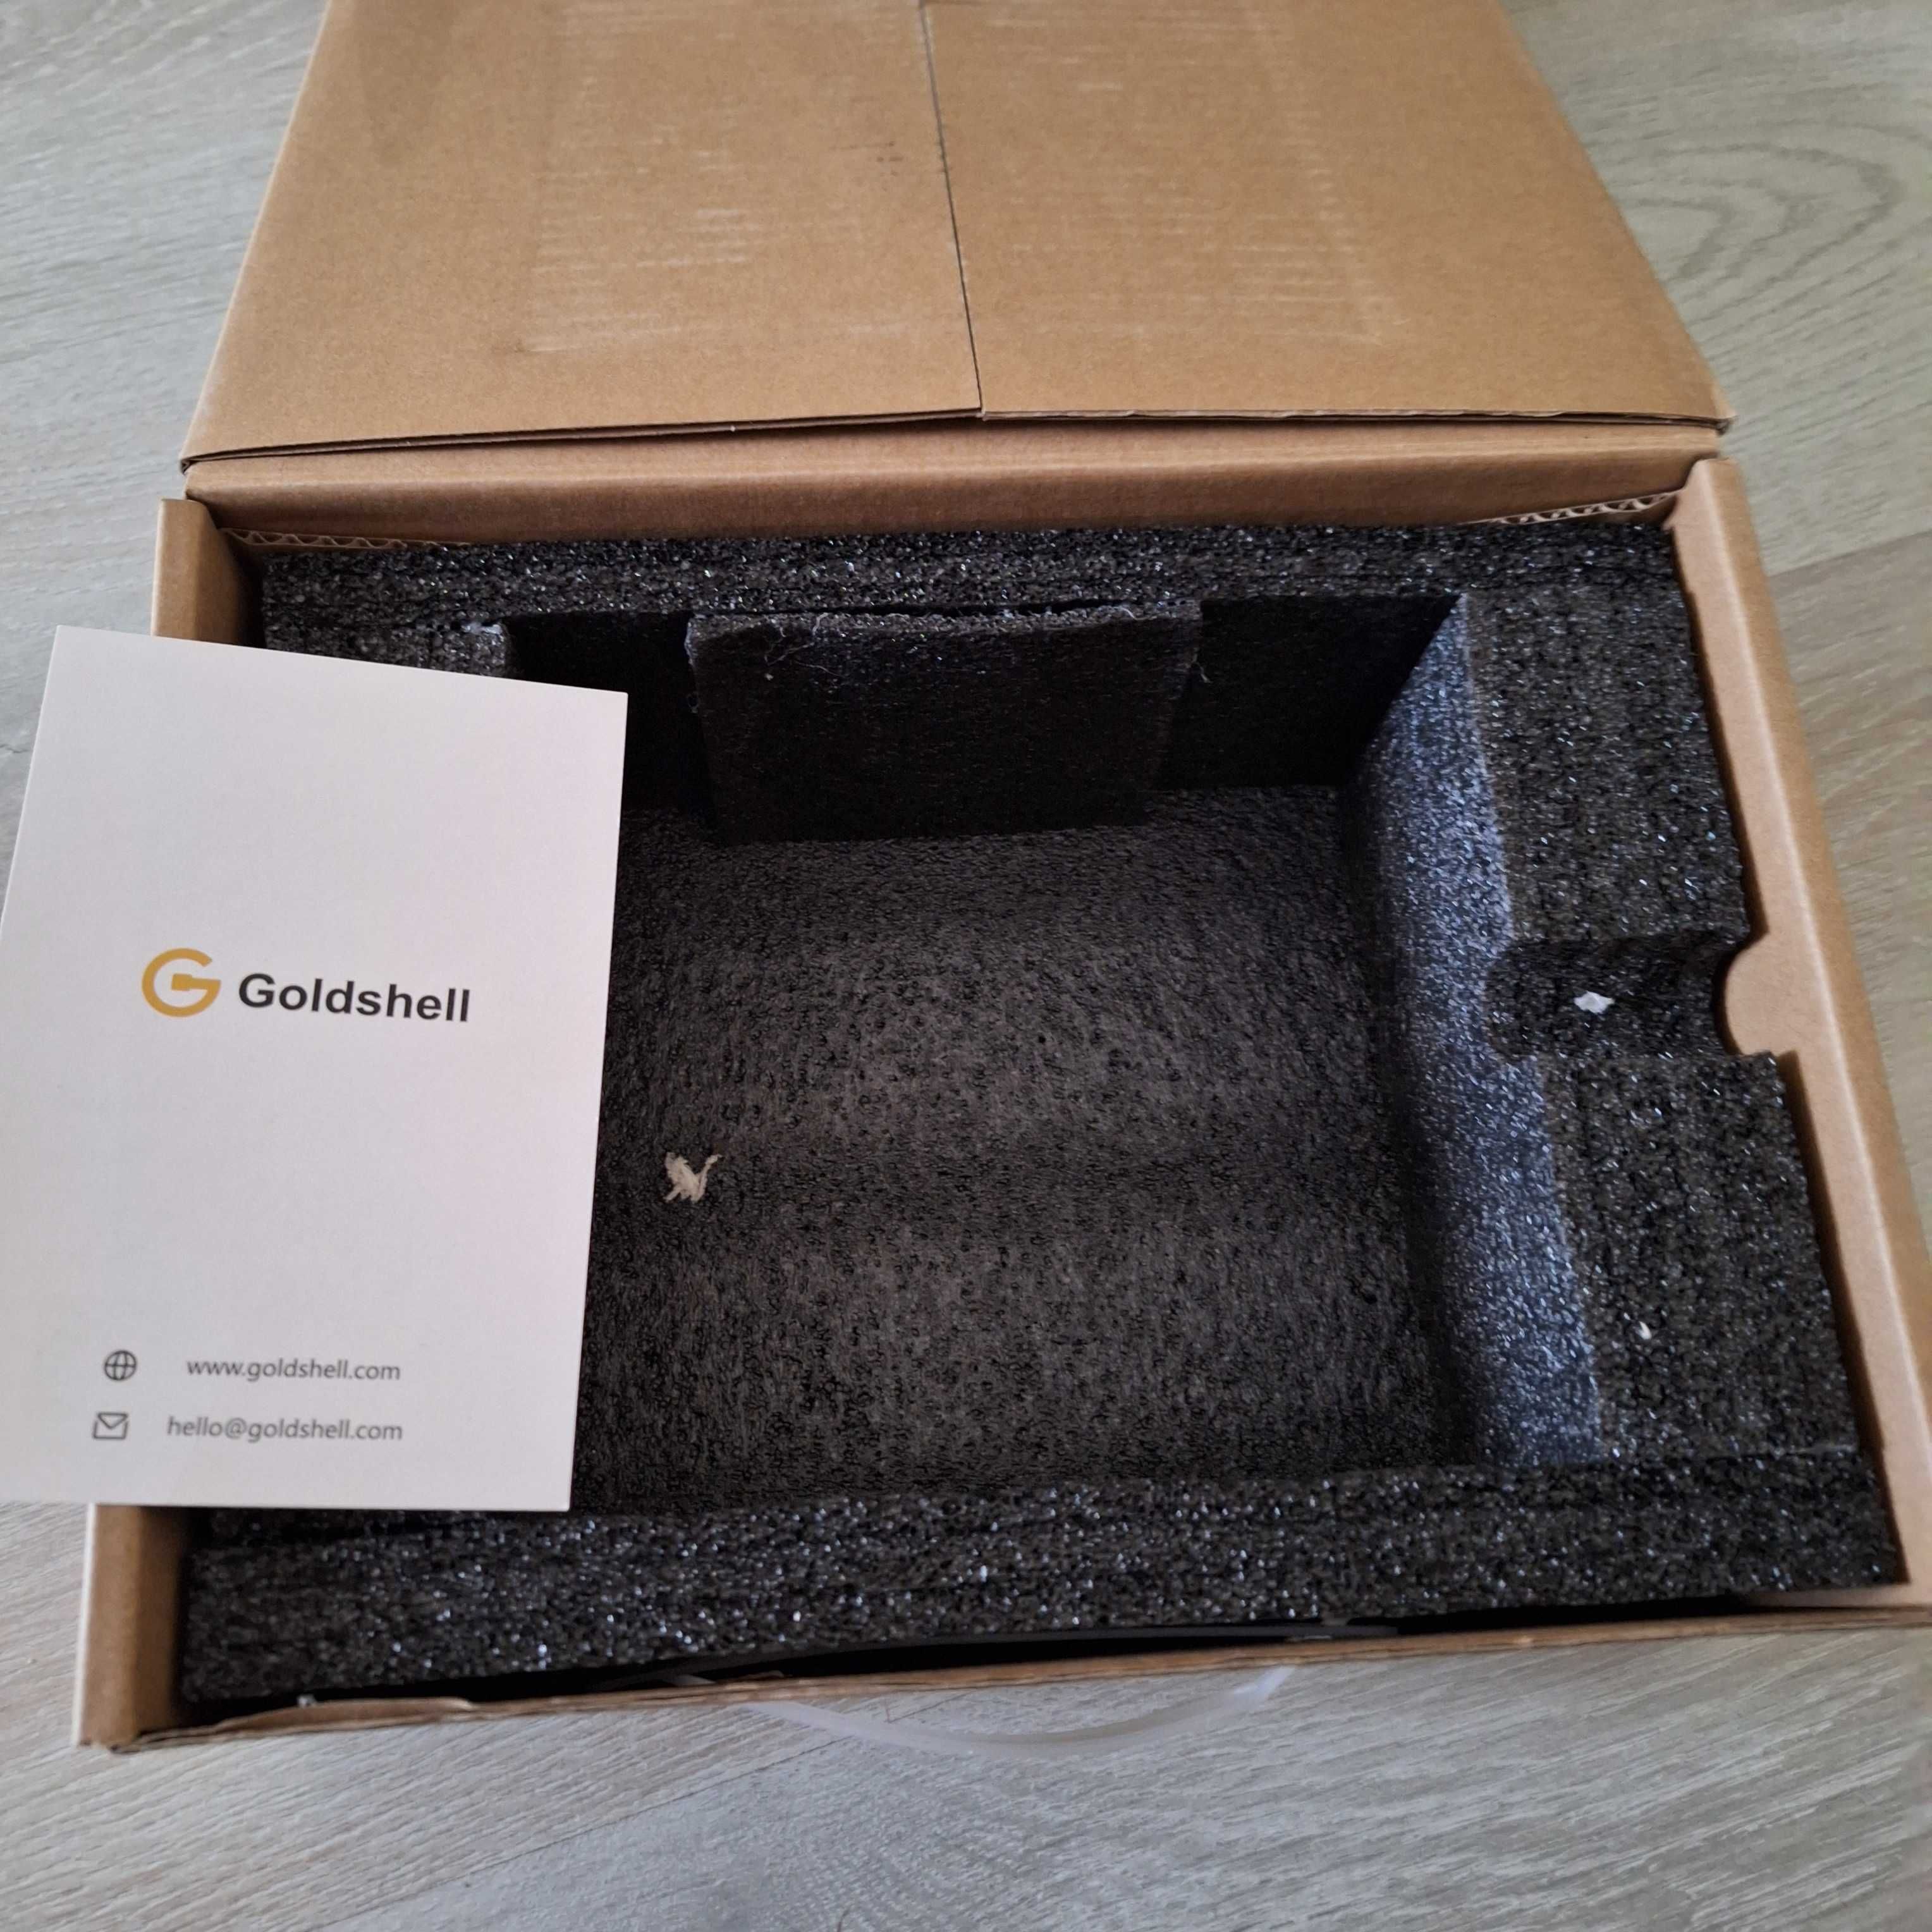 Goldshell
ST-BOX